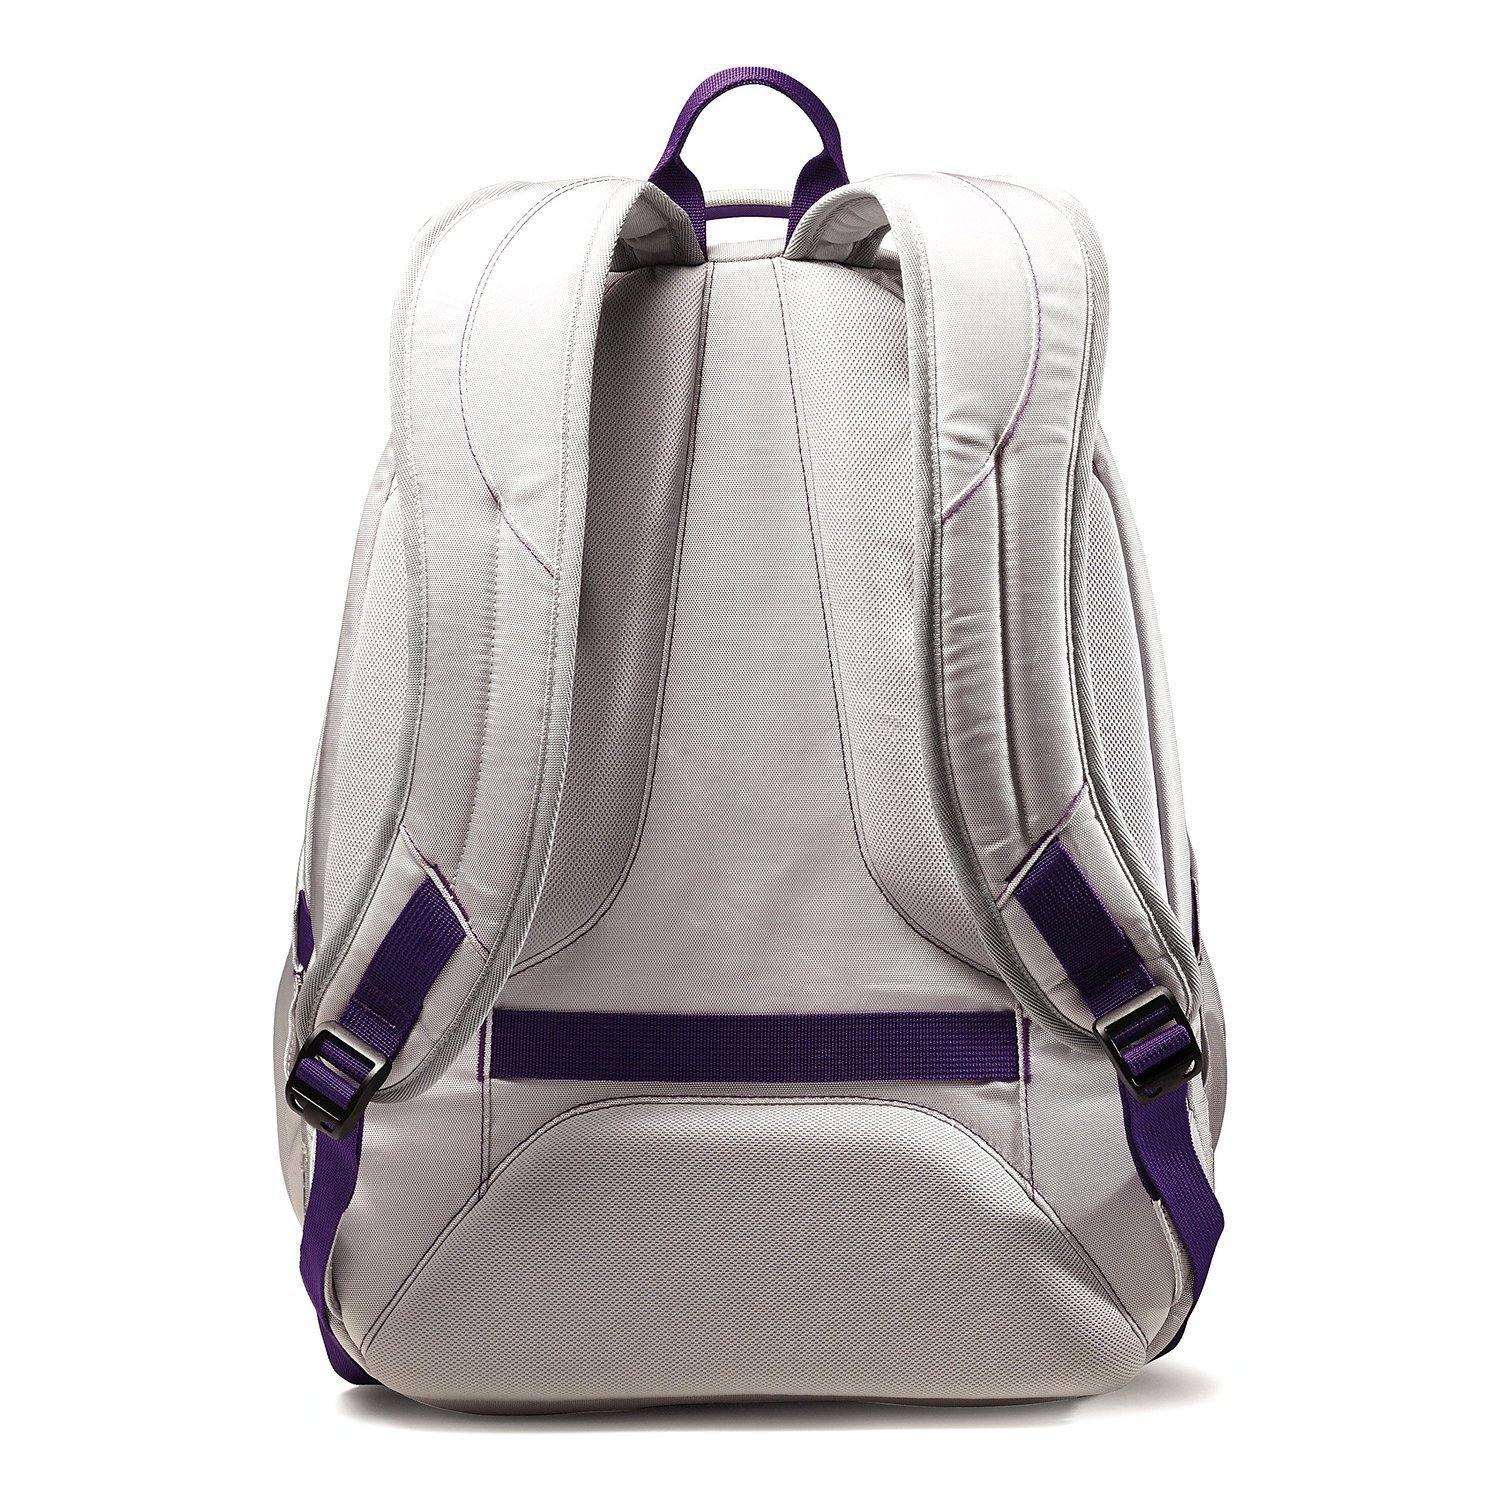 Nike Satin Backpacks for Women